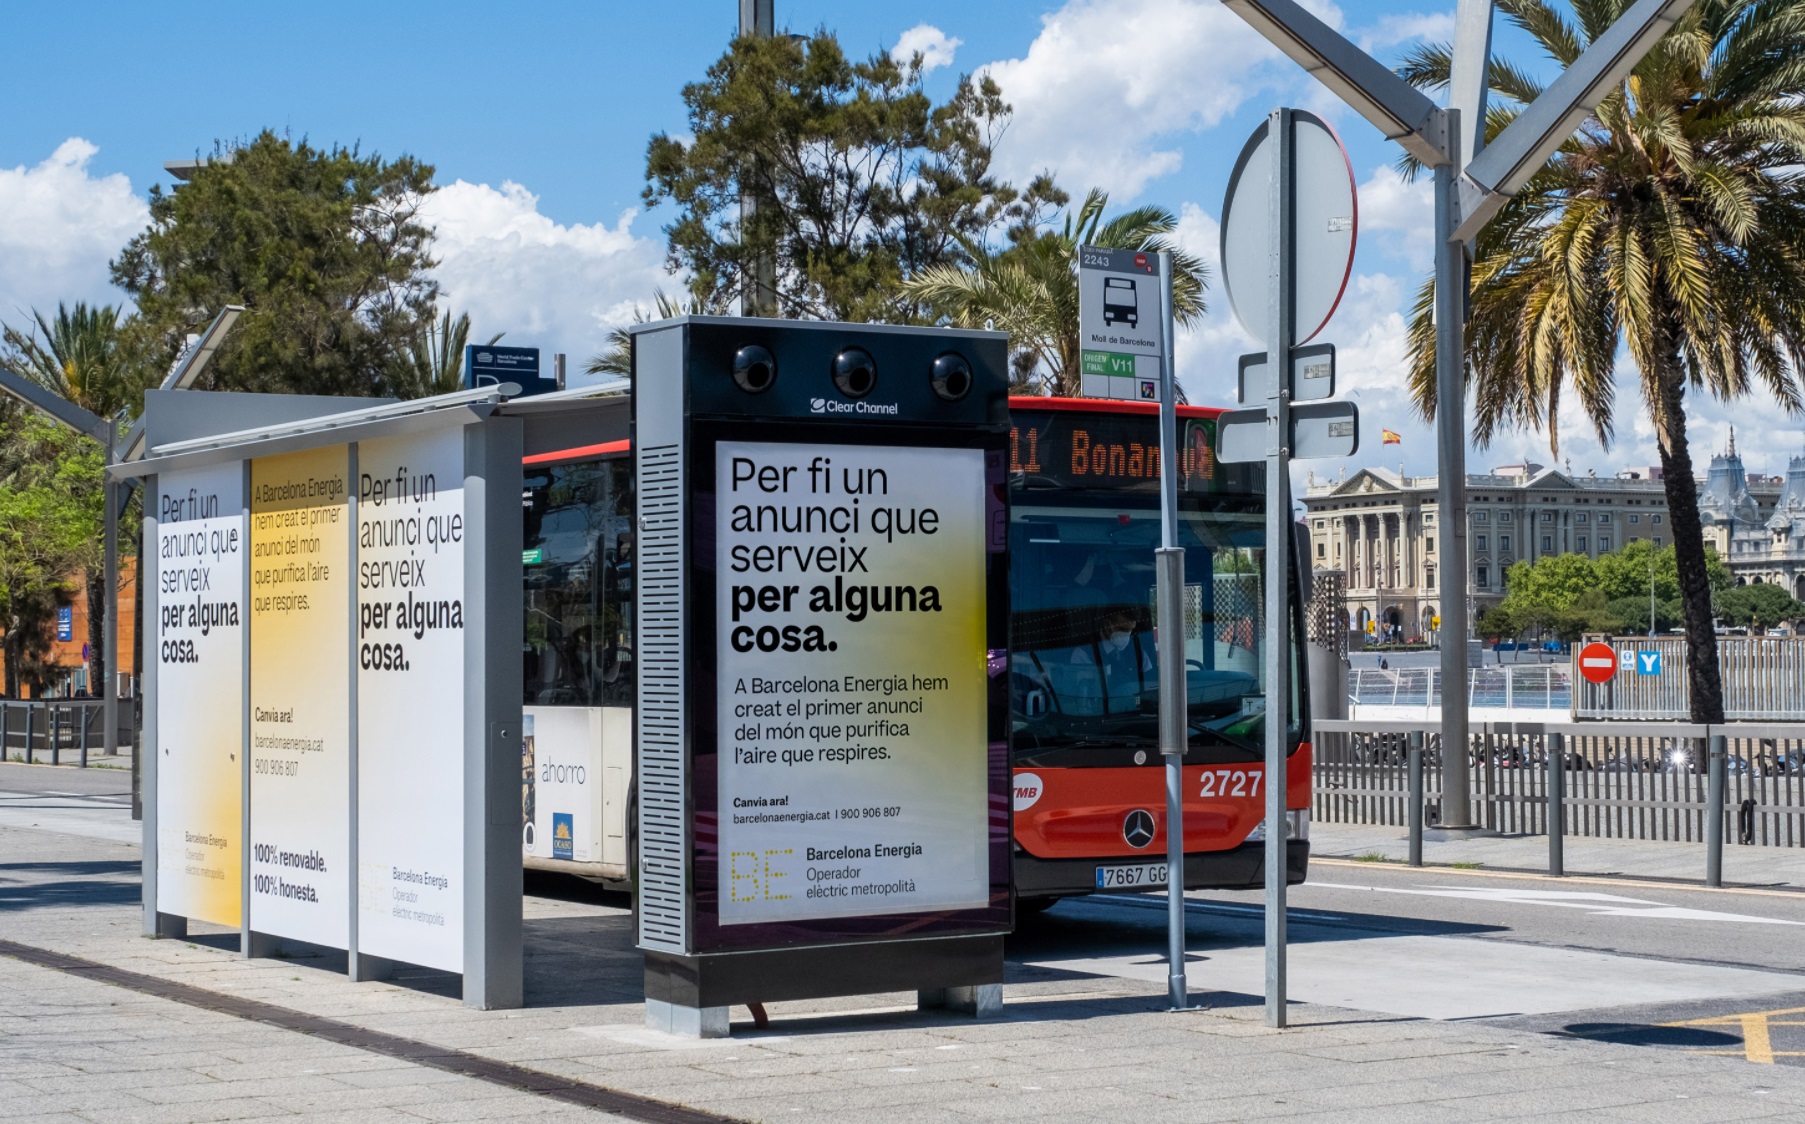 purificador aire , Barcelona Energia ,primer anuncio , mobiliario urbano , purifica el aire, clear channel., barcelona, programapublicidad